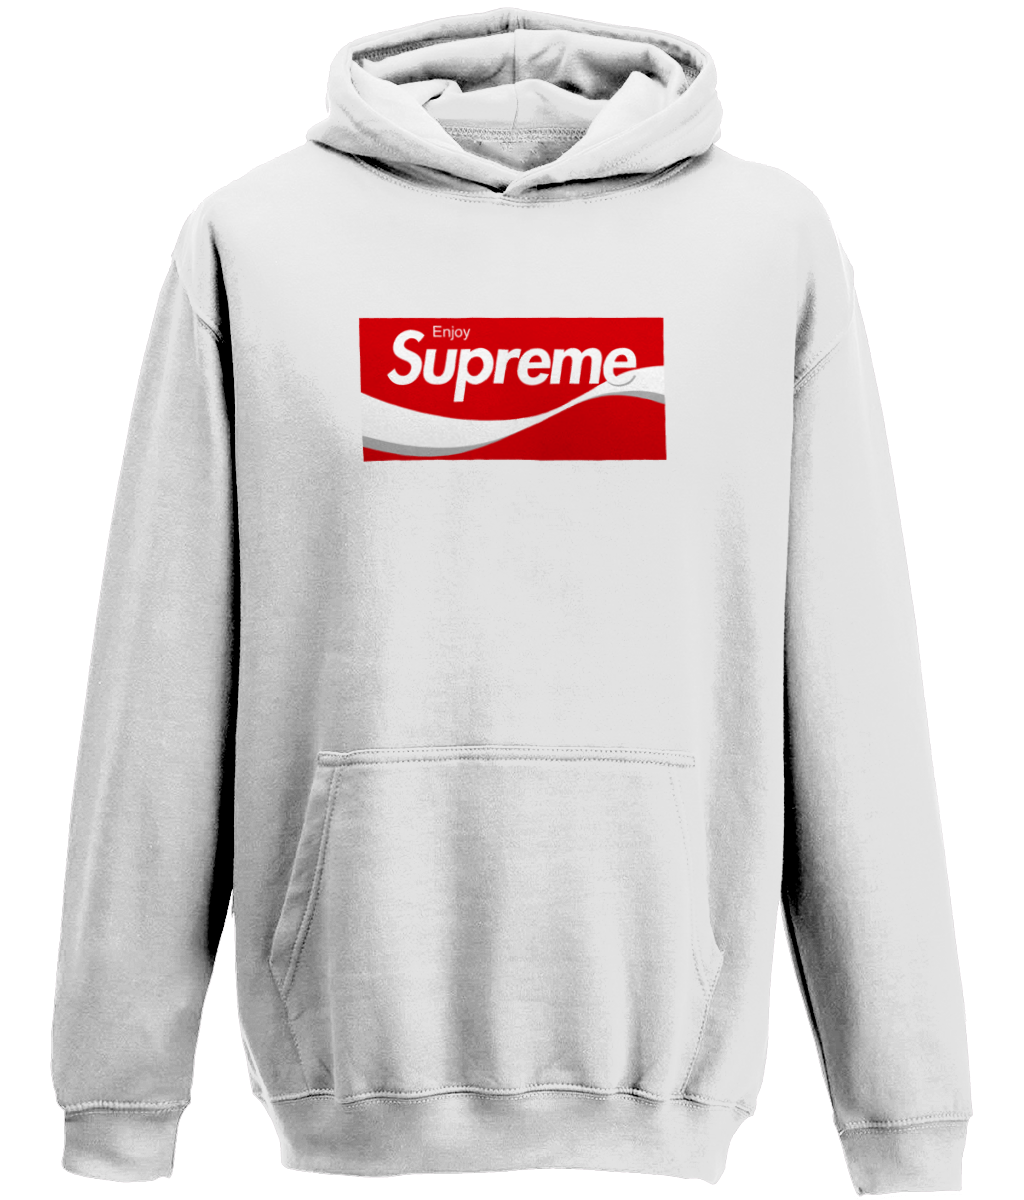 supreme kids sweater